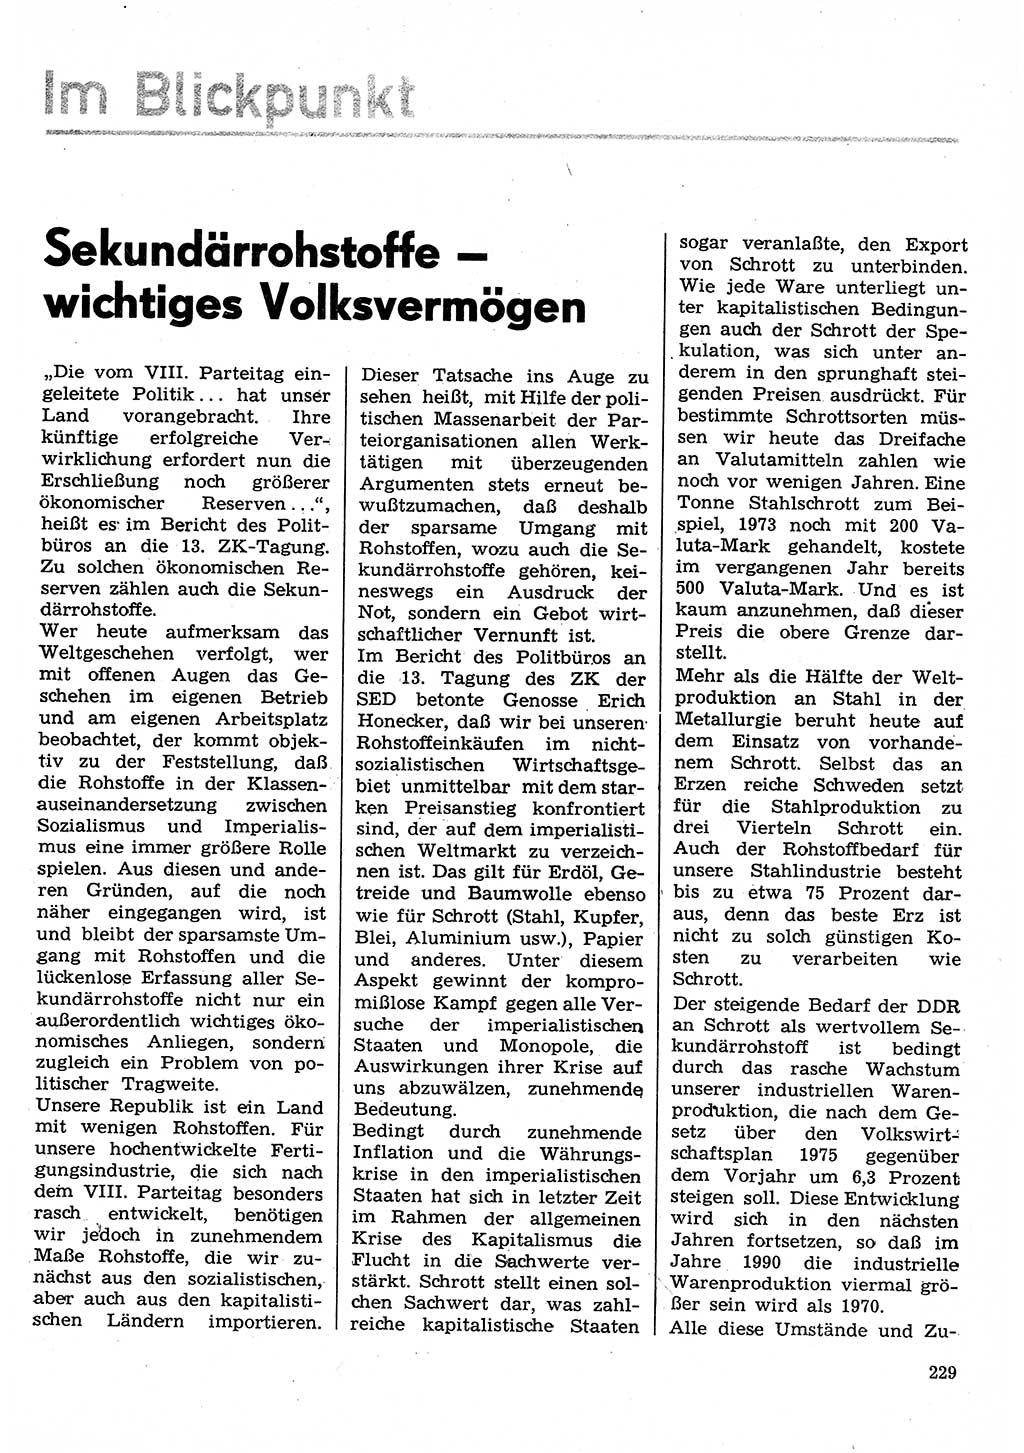 Neuer Weg (NW), Organ des Zentralkomitees (ZK) der SED (Sozialistische Einheitspartei Deutschlands) für Fragen des Parteilebens, 30. Jahrgang [Deutsche Demokratische Republik (DDR)] 1975, Seite 229 (NW ZK SED DDR 1975, S. 229)